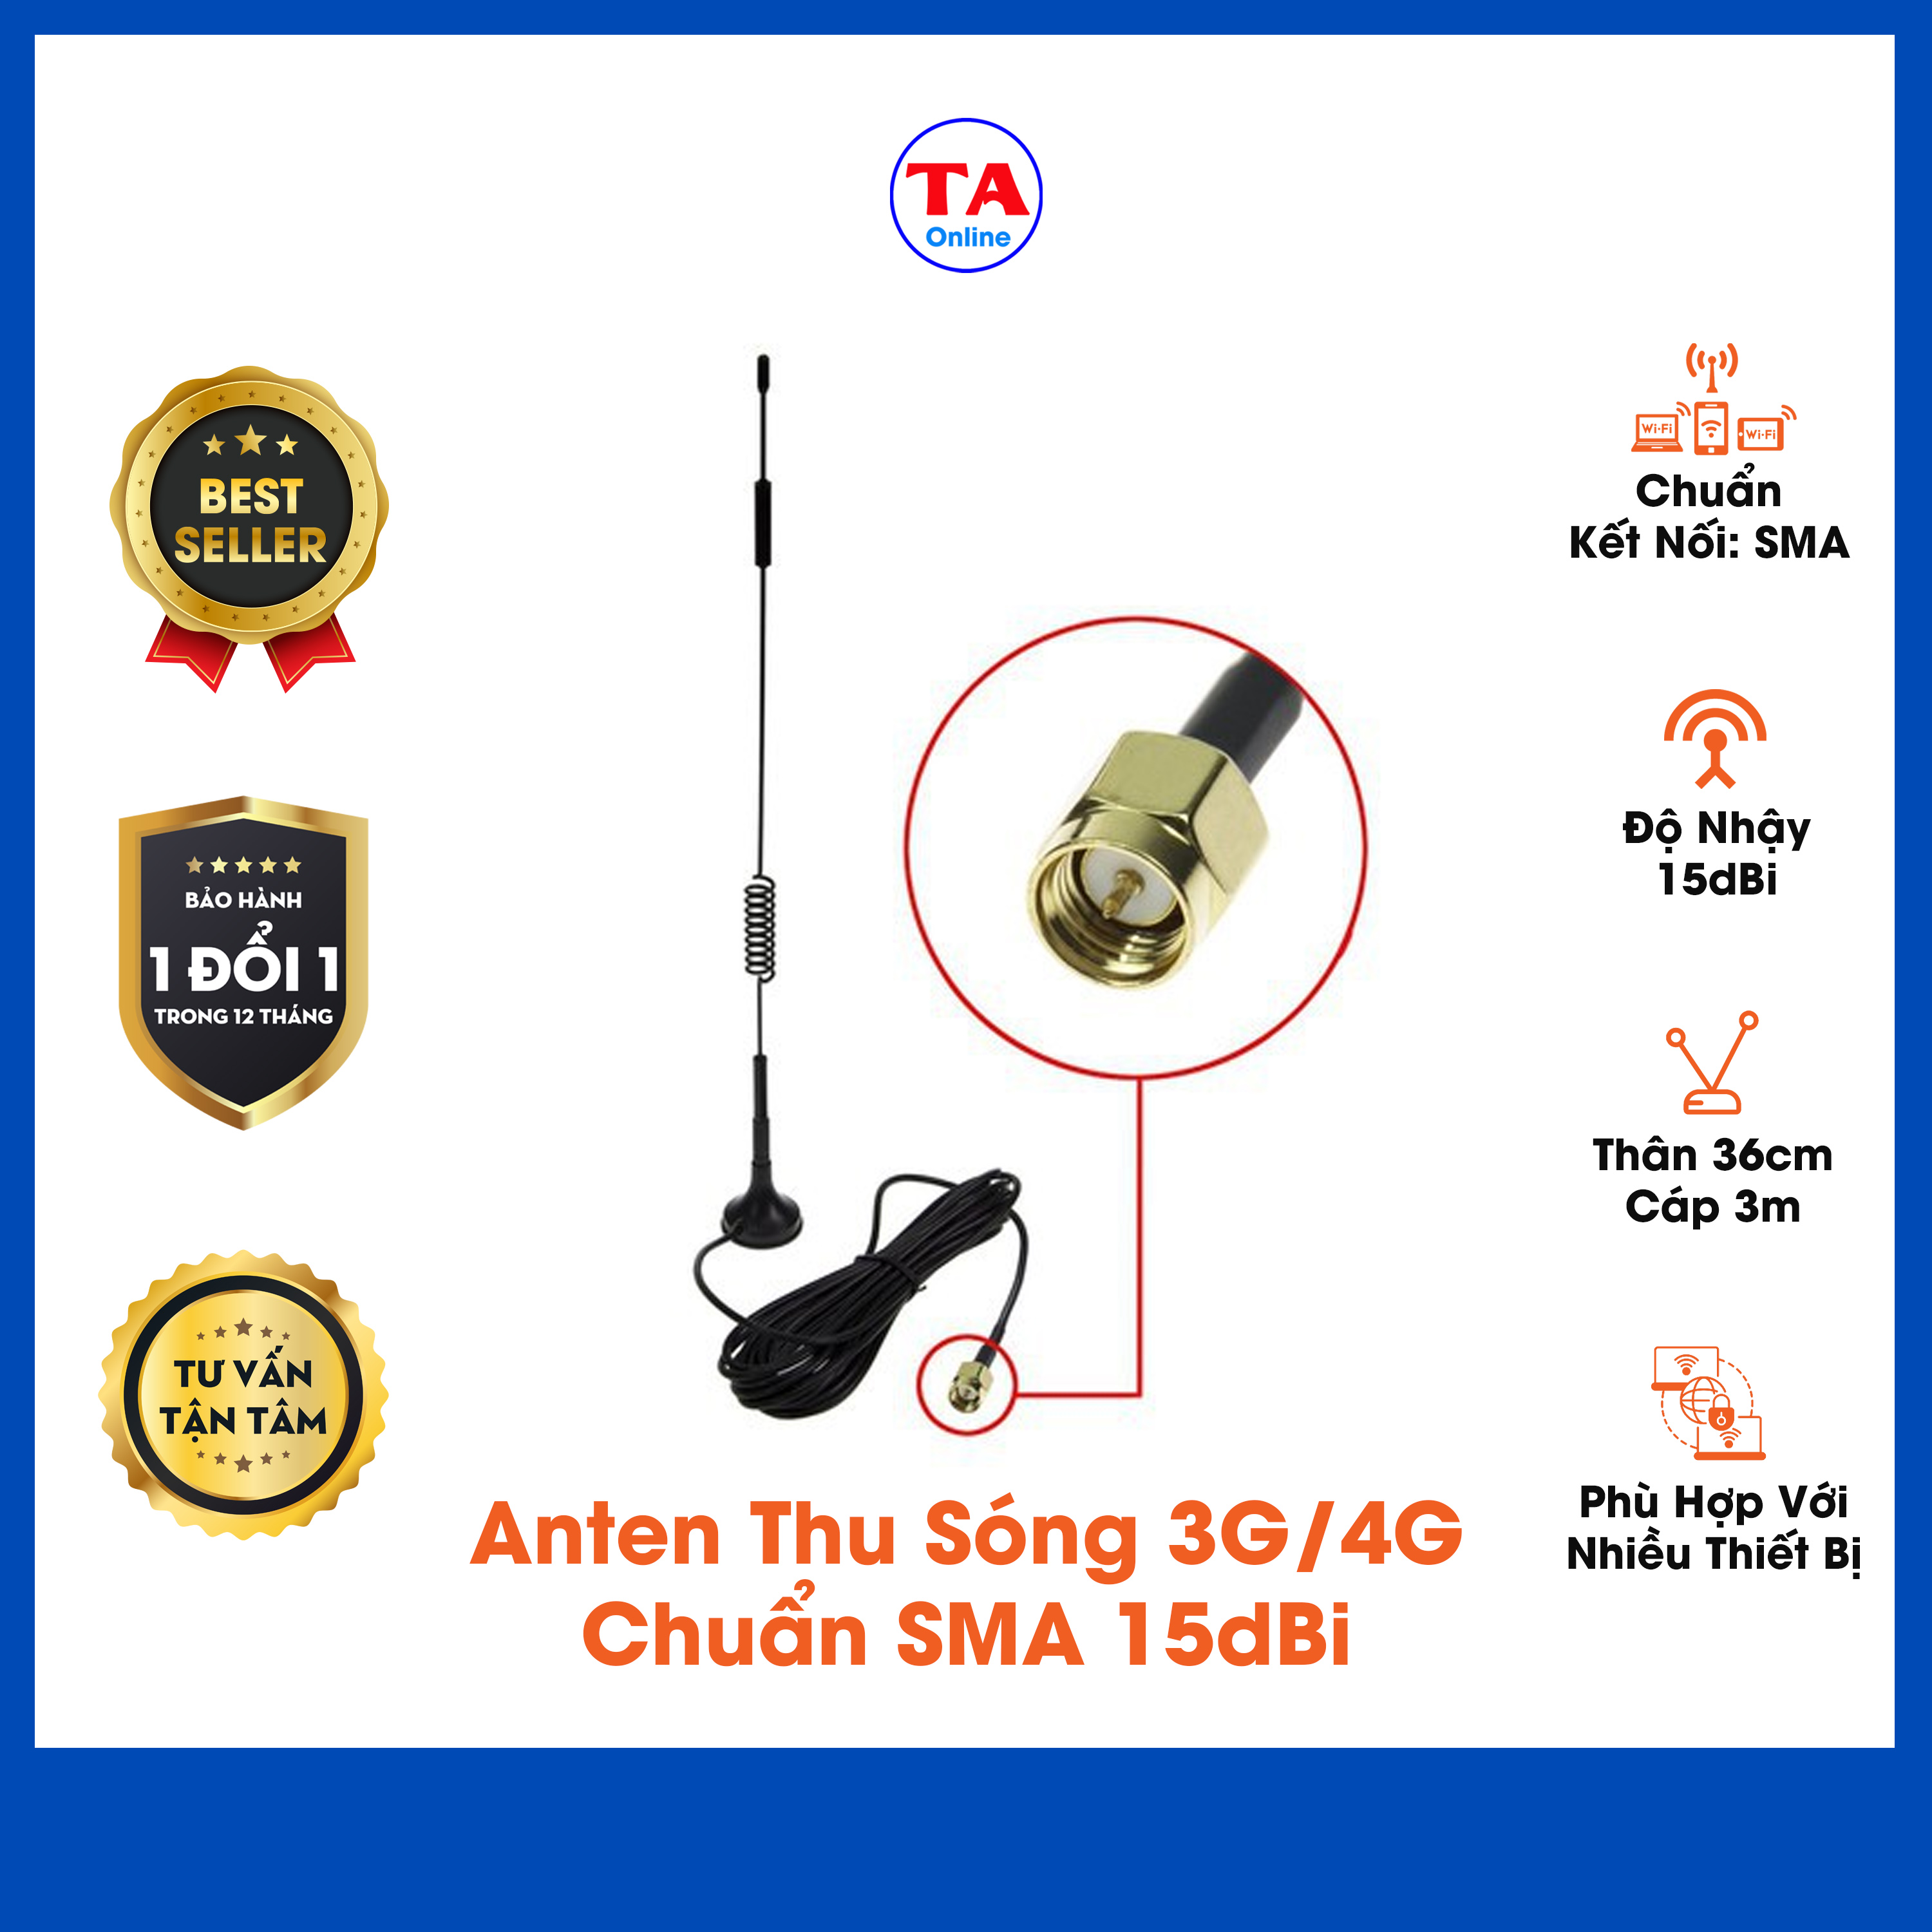 Anten Thu Sóng 3G/4G Chuẩn SMA 15dBi Thân 36cm Cáp Dài 3m